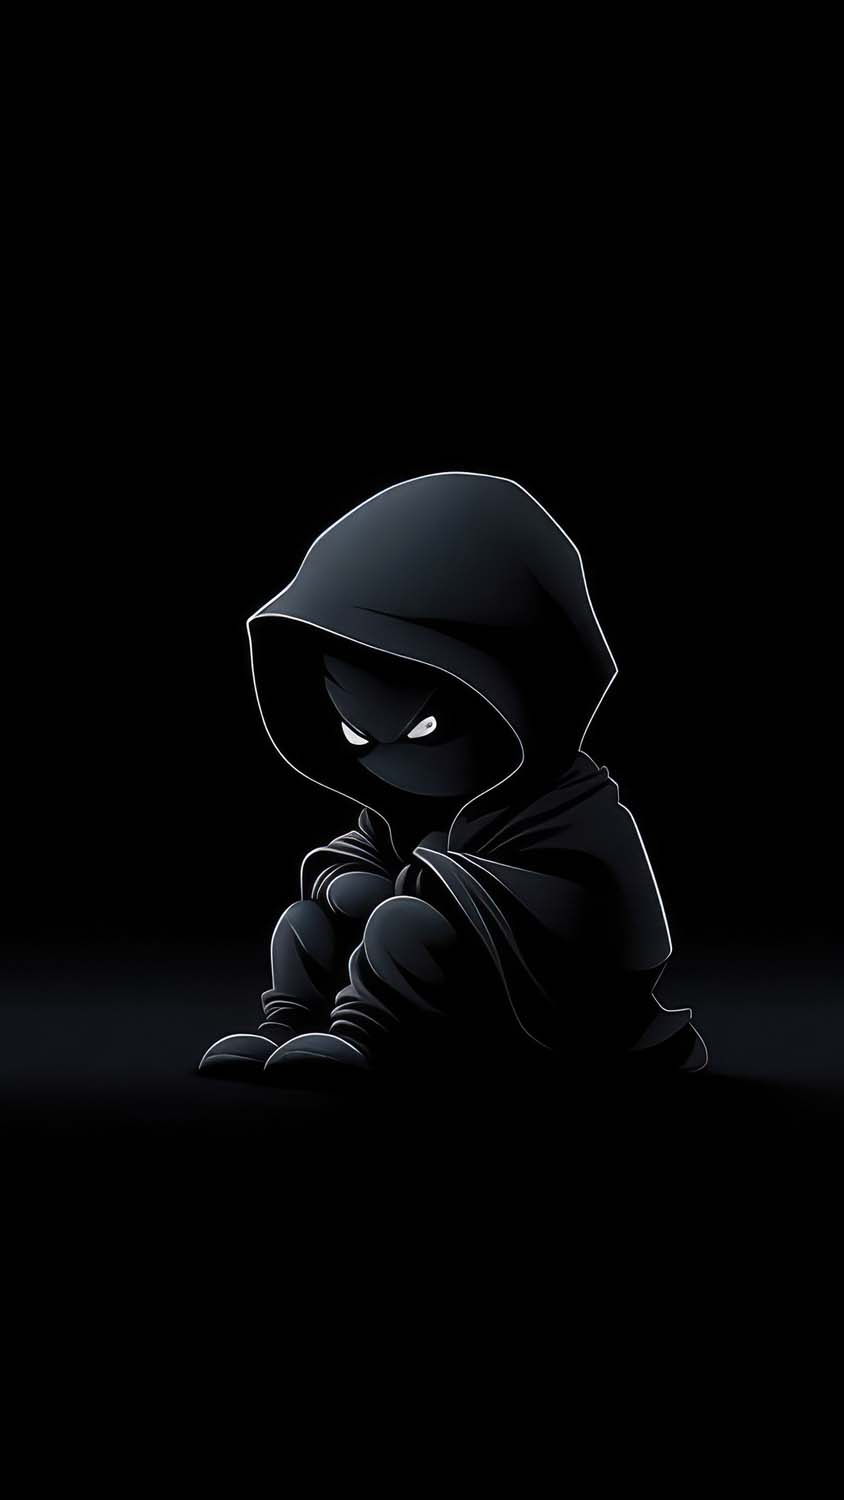 Dark soul boy minimal hoodie iPhone Wallpaper 4K